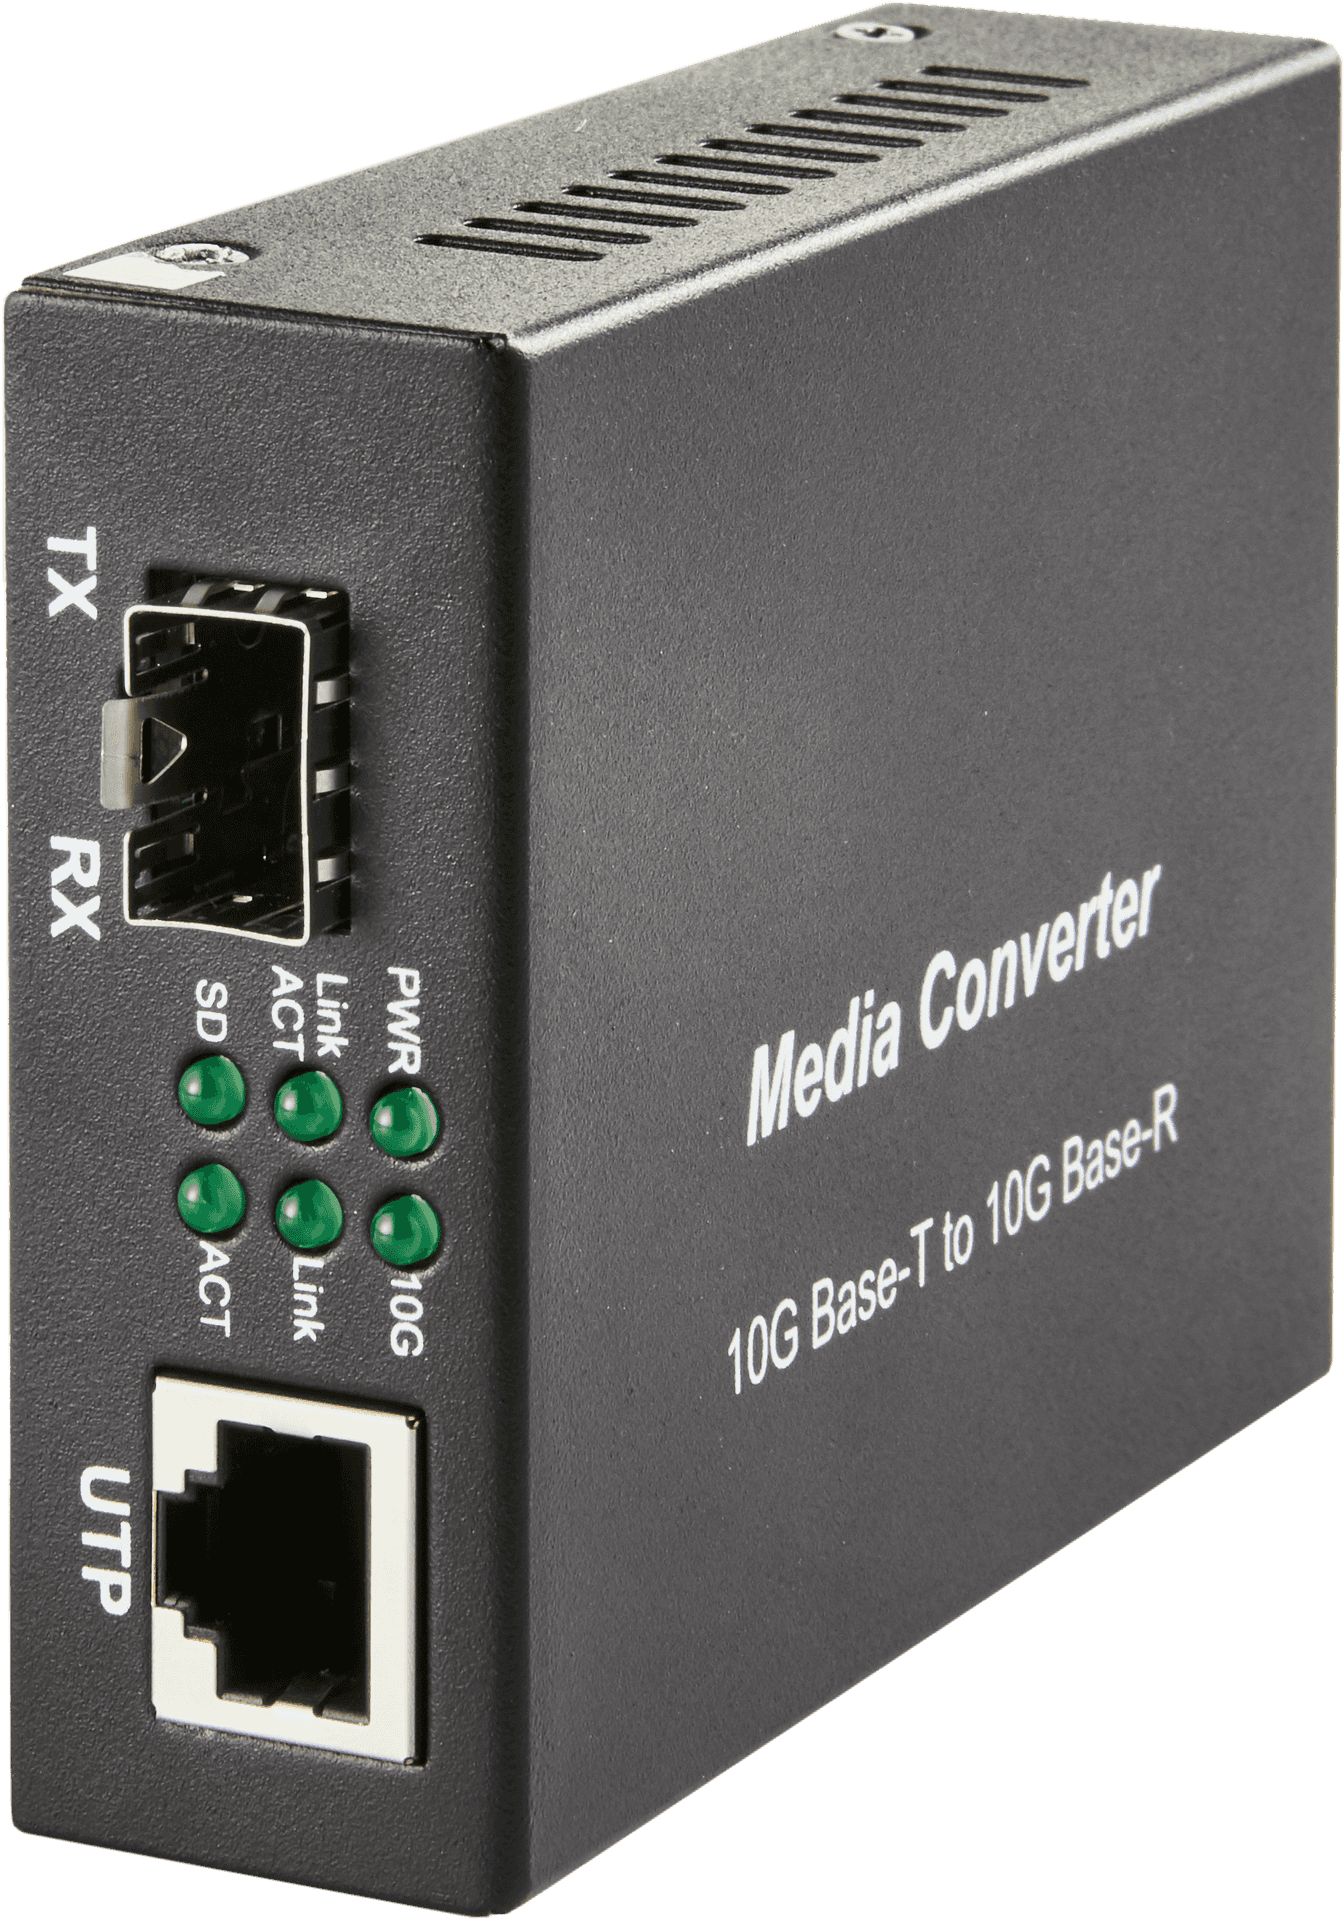 10 G Ethernet Media Converter PNG image